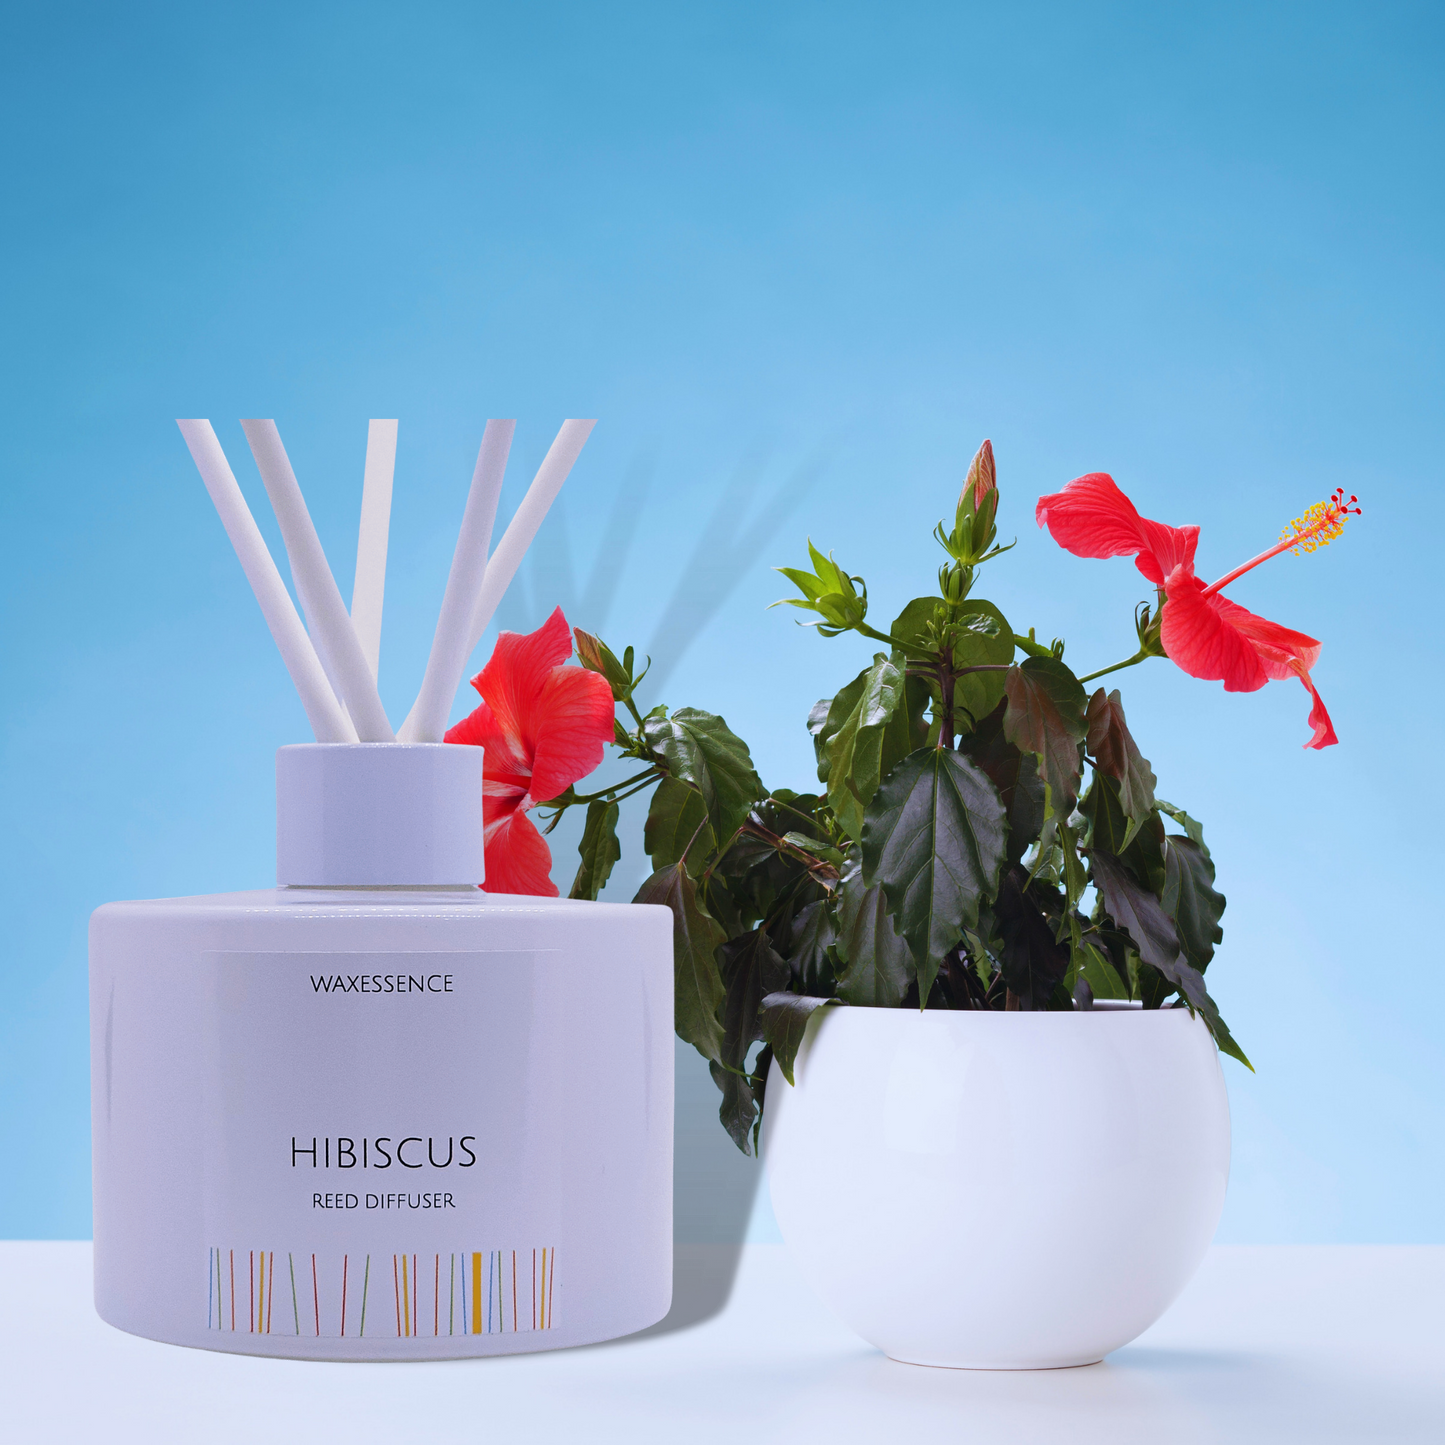 Hibiscus Reed Diffuser | Essenza Gloss White  | Aromatherapy Home Decor | Diffuser Oil | 6.8 fl. oz